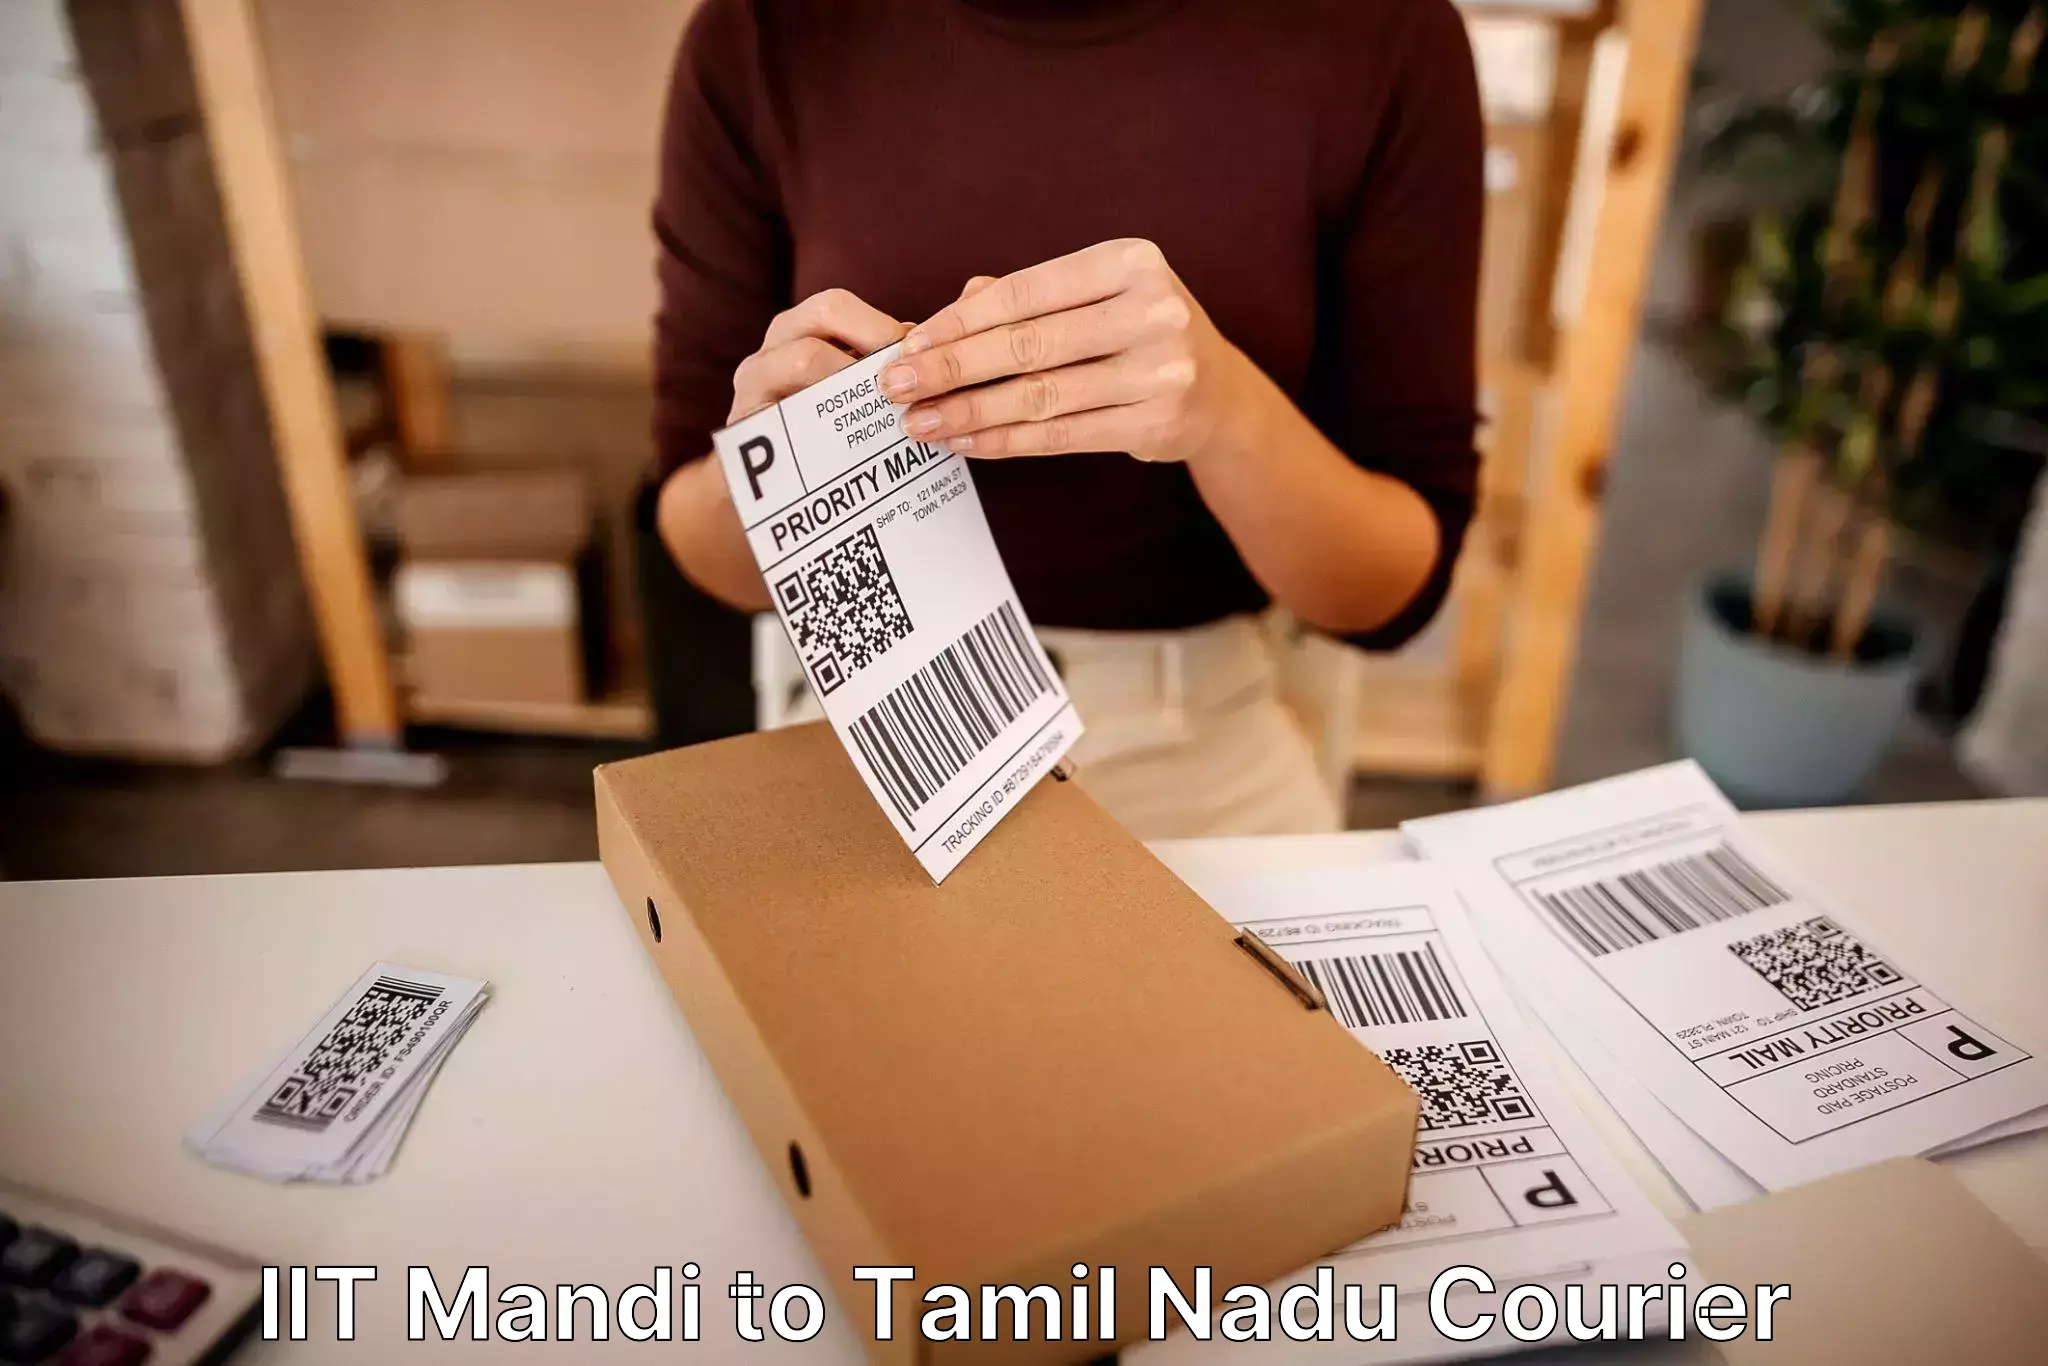 Household moving experts IIT Mandi to Thiruvadanai